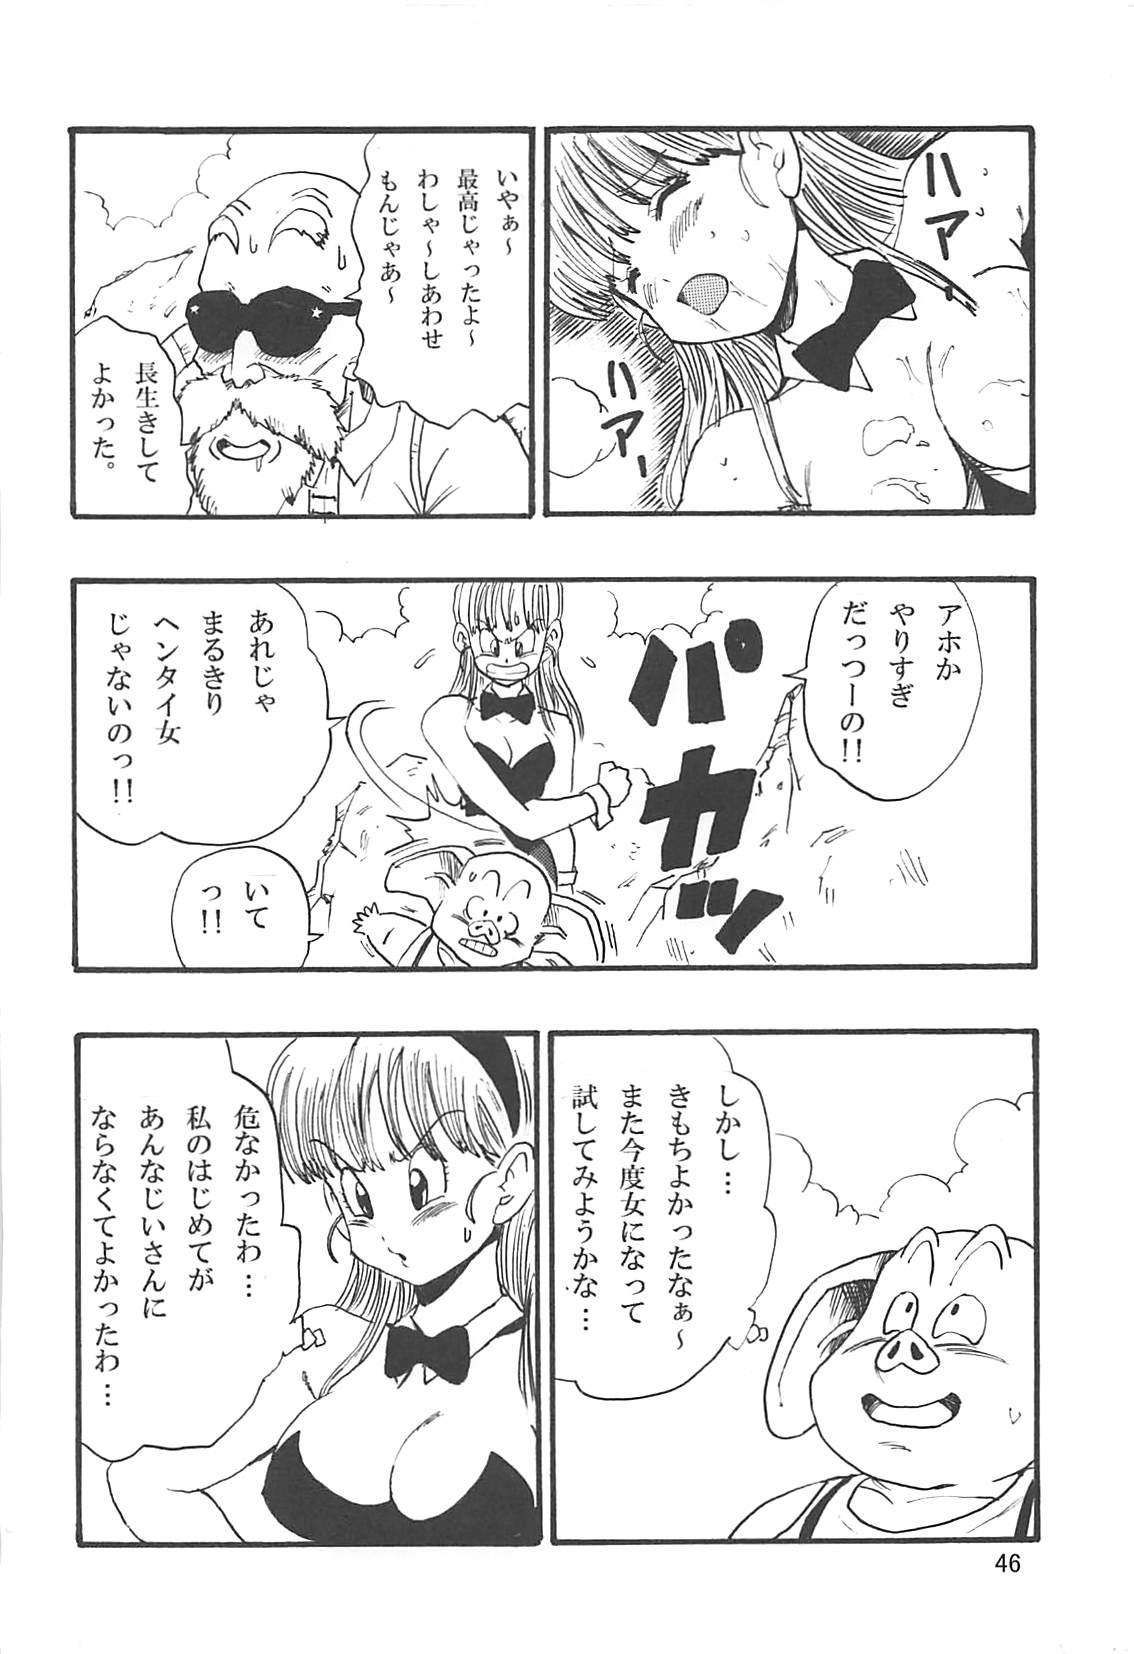 Dragon Ball Episode of Bulma 1 Fukkokuban 46